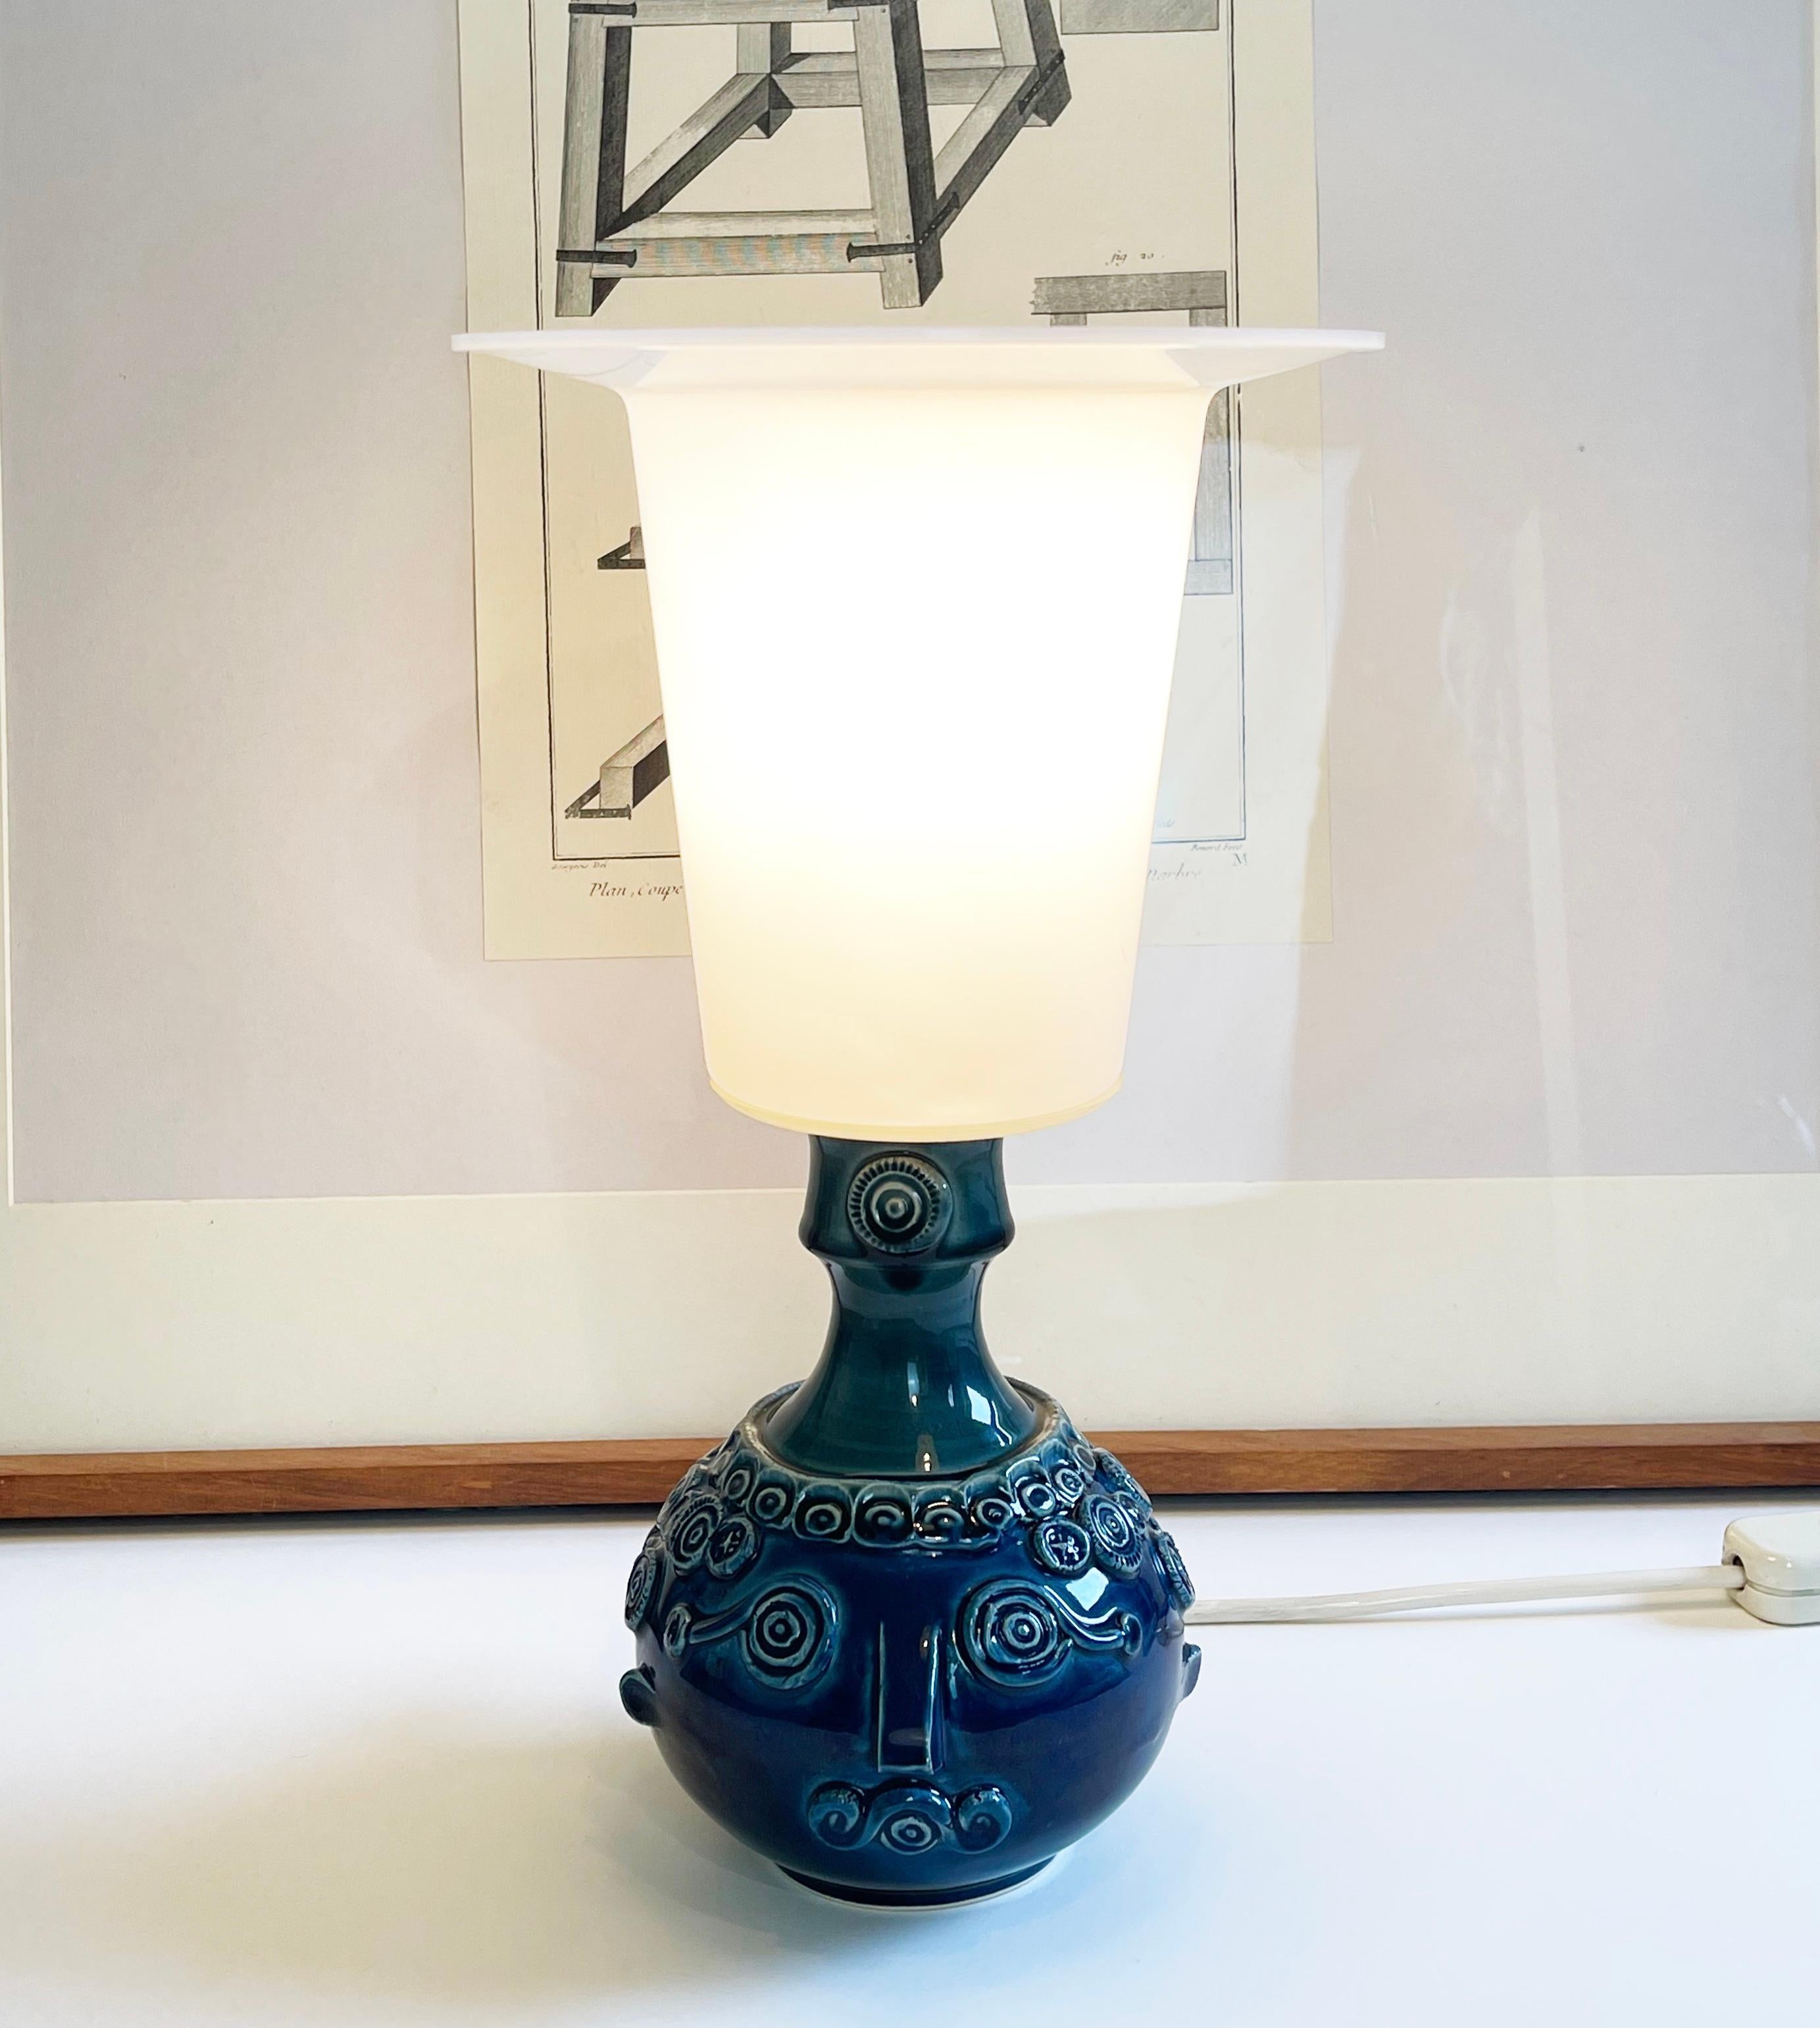 Plastic Rosenthal Blue Ceramic Table Lamp by Bjørn Wiinblad Studio Line, 1960s For Sale